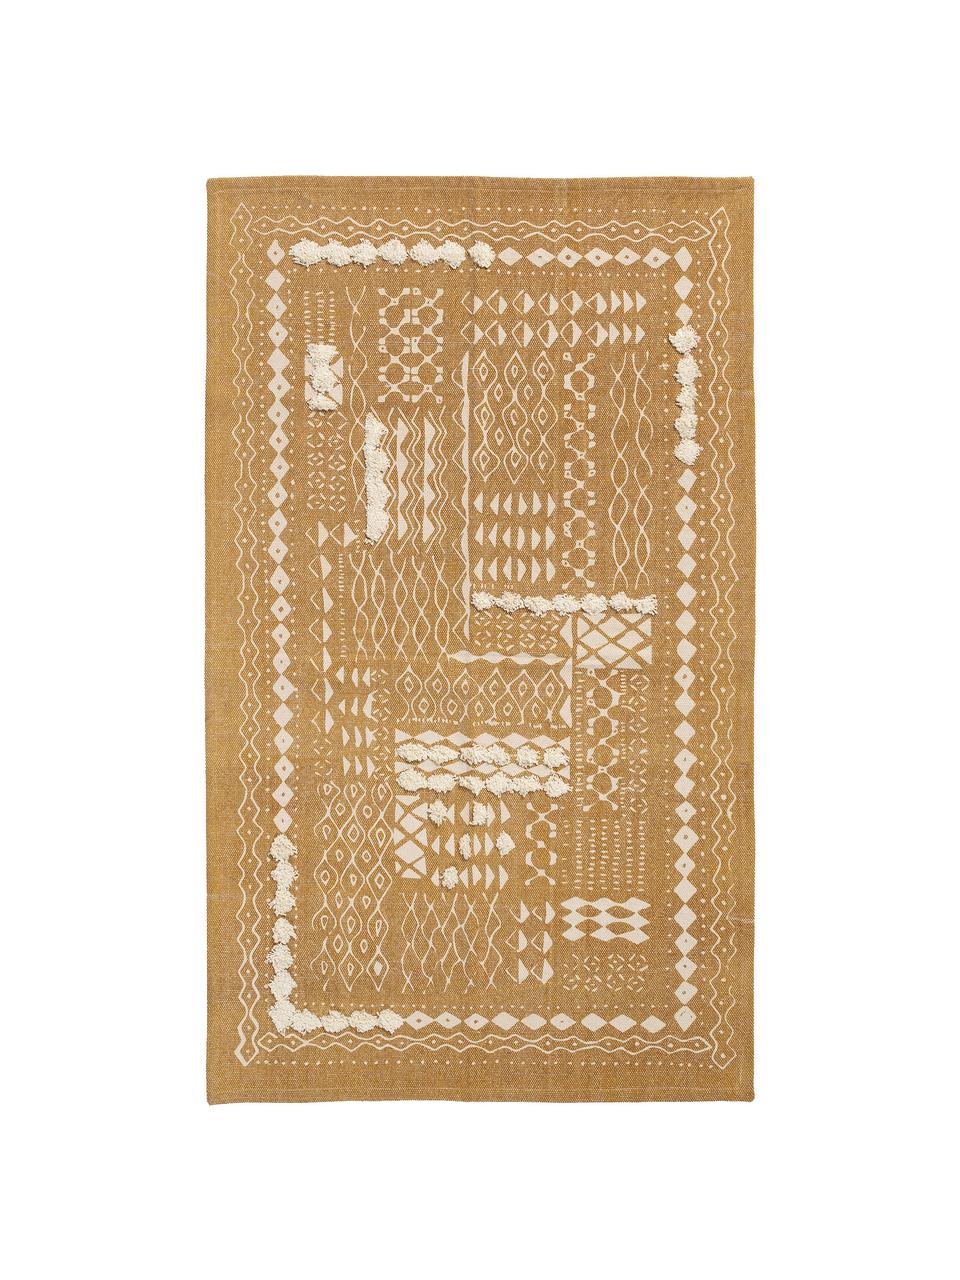 Boho Baumwollteppich Boa mit Hoch-Tief-Muster in Senfgelb/Weiss, 100% Baumwolle, Gelb, Weiss, B 150 x L 200 cm (Grösse S)